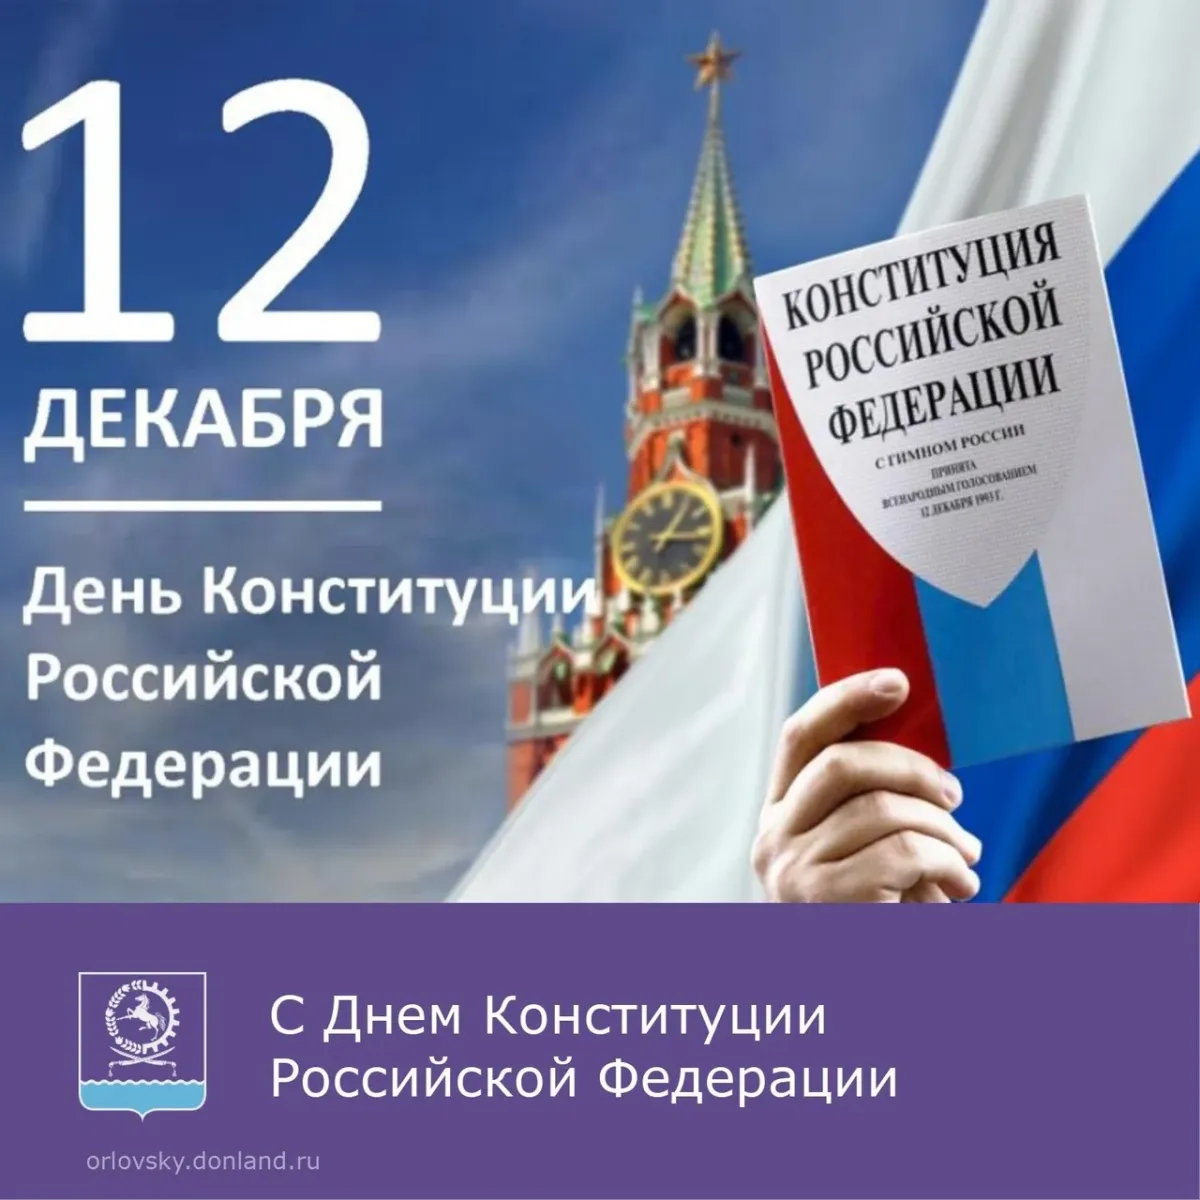 6 декабря день конституции. День Конституции Российской Федерации. 12 Декабря день Конституции. Празднование дня Конституции. Поздравление с днем Конституции.